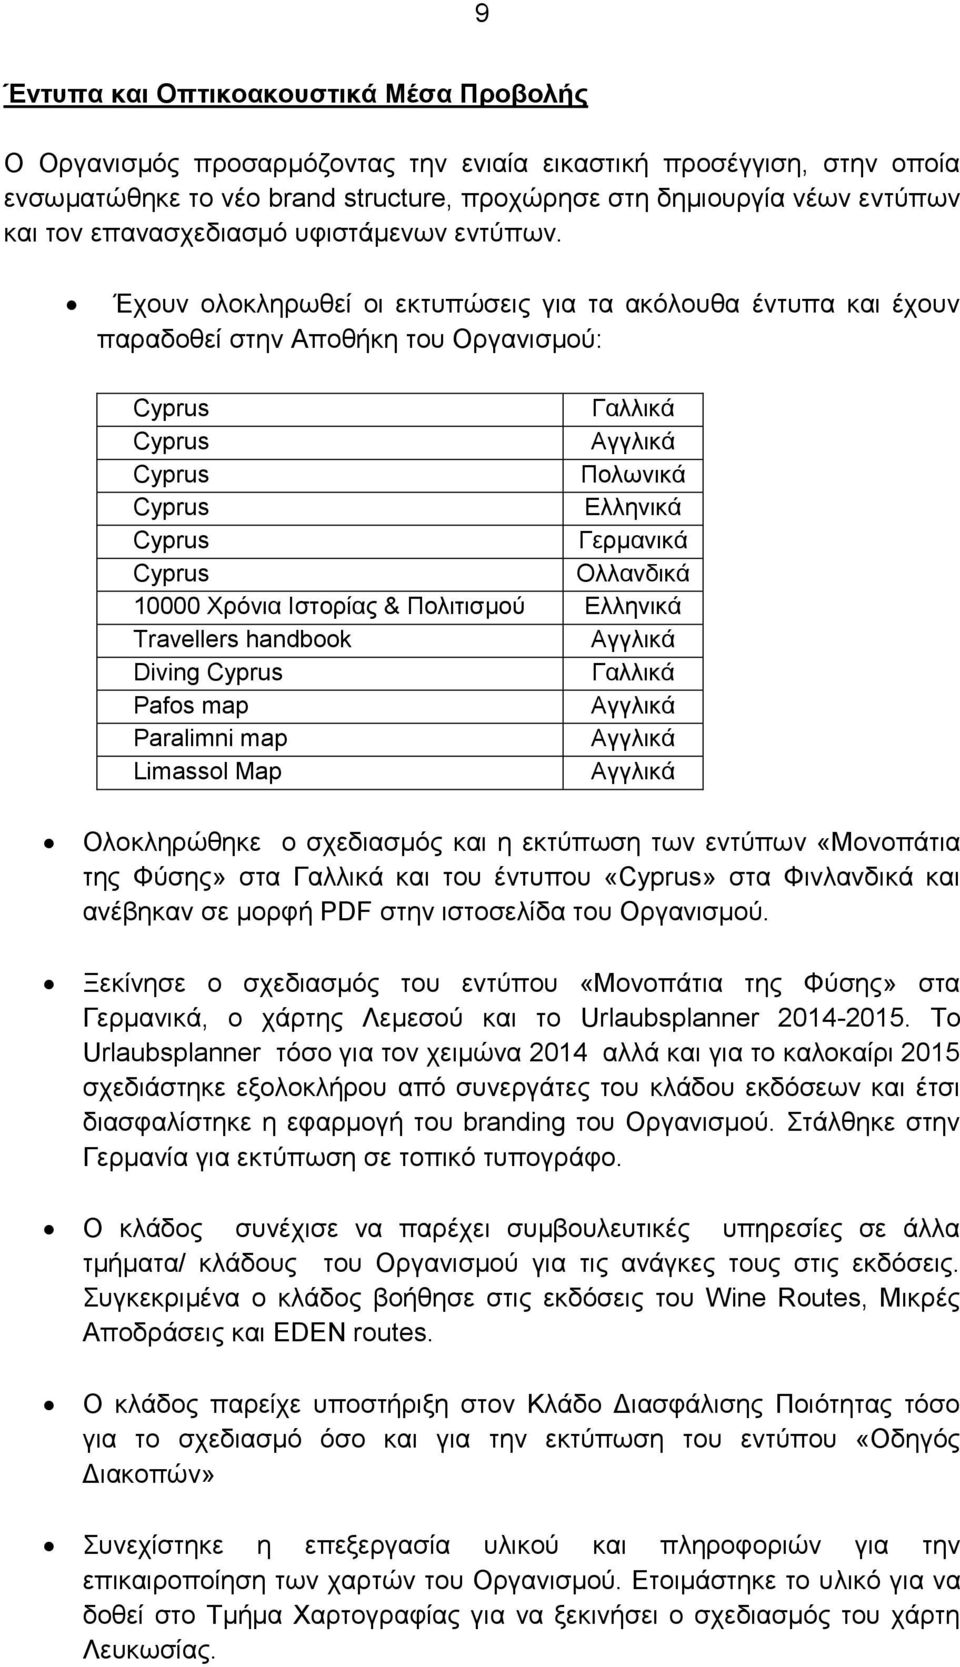 Έχουν ολοκληρωθεί οι εκτυπώσεις για τα ακόλουθα έντυπα και έχουν παραδοθεί στην Αποθήκη του Οργανισμού: Cyprus Γαλλικά Cyprus Αγγλικά Cyprus Πολωνικά Cyprus Ελληνικά Cyprus Γερμανικά Cyprus Ολλανδικά